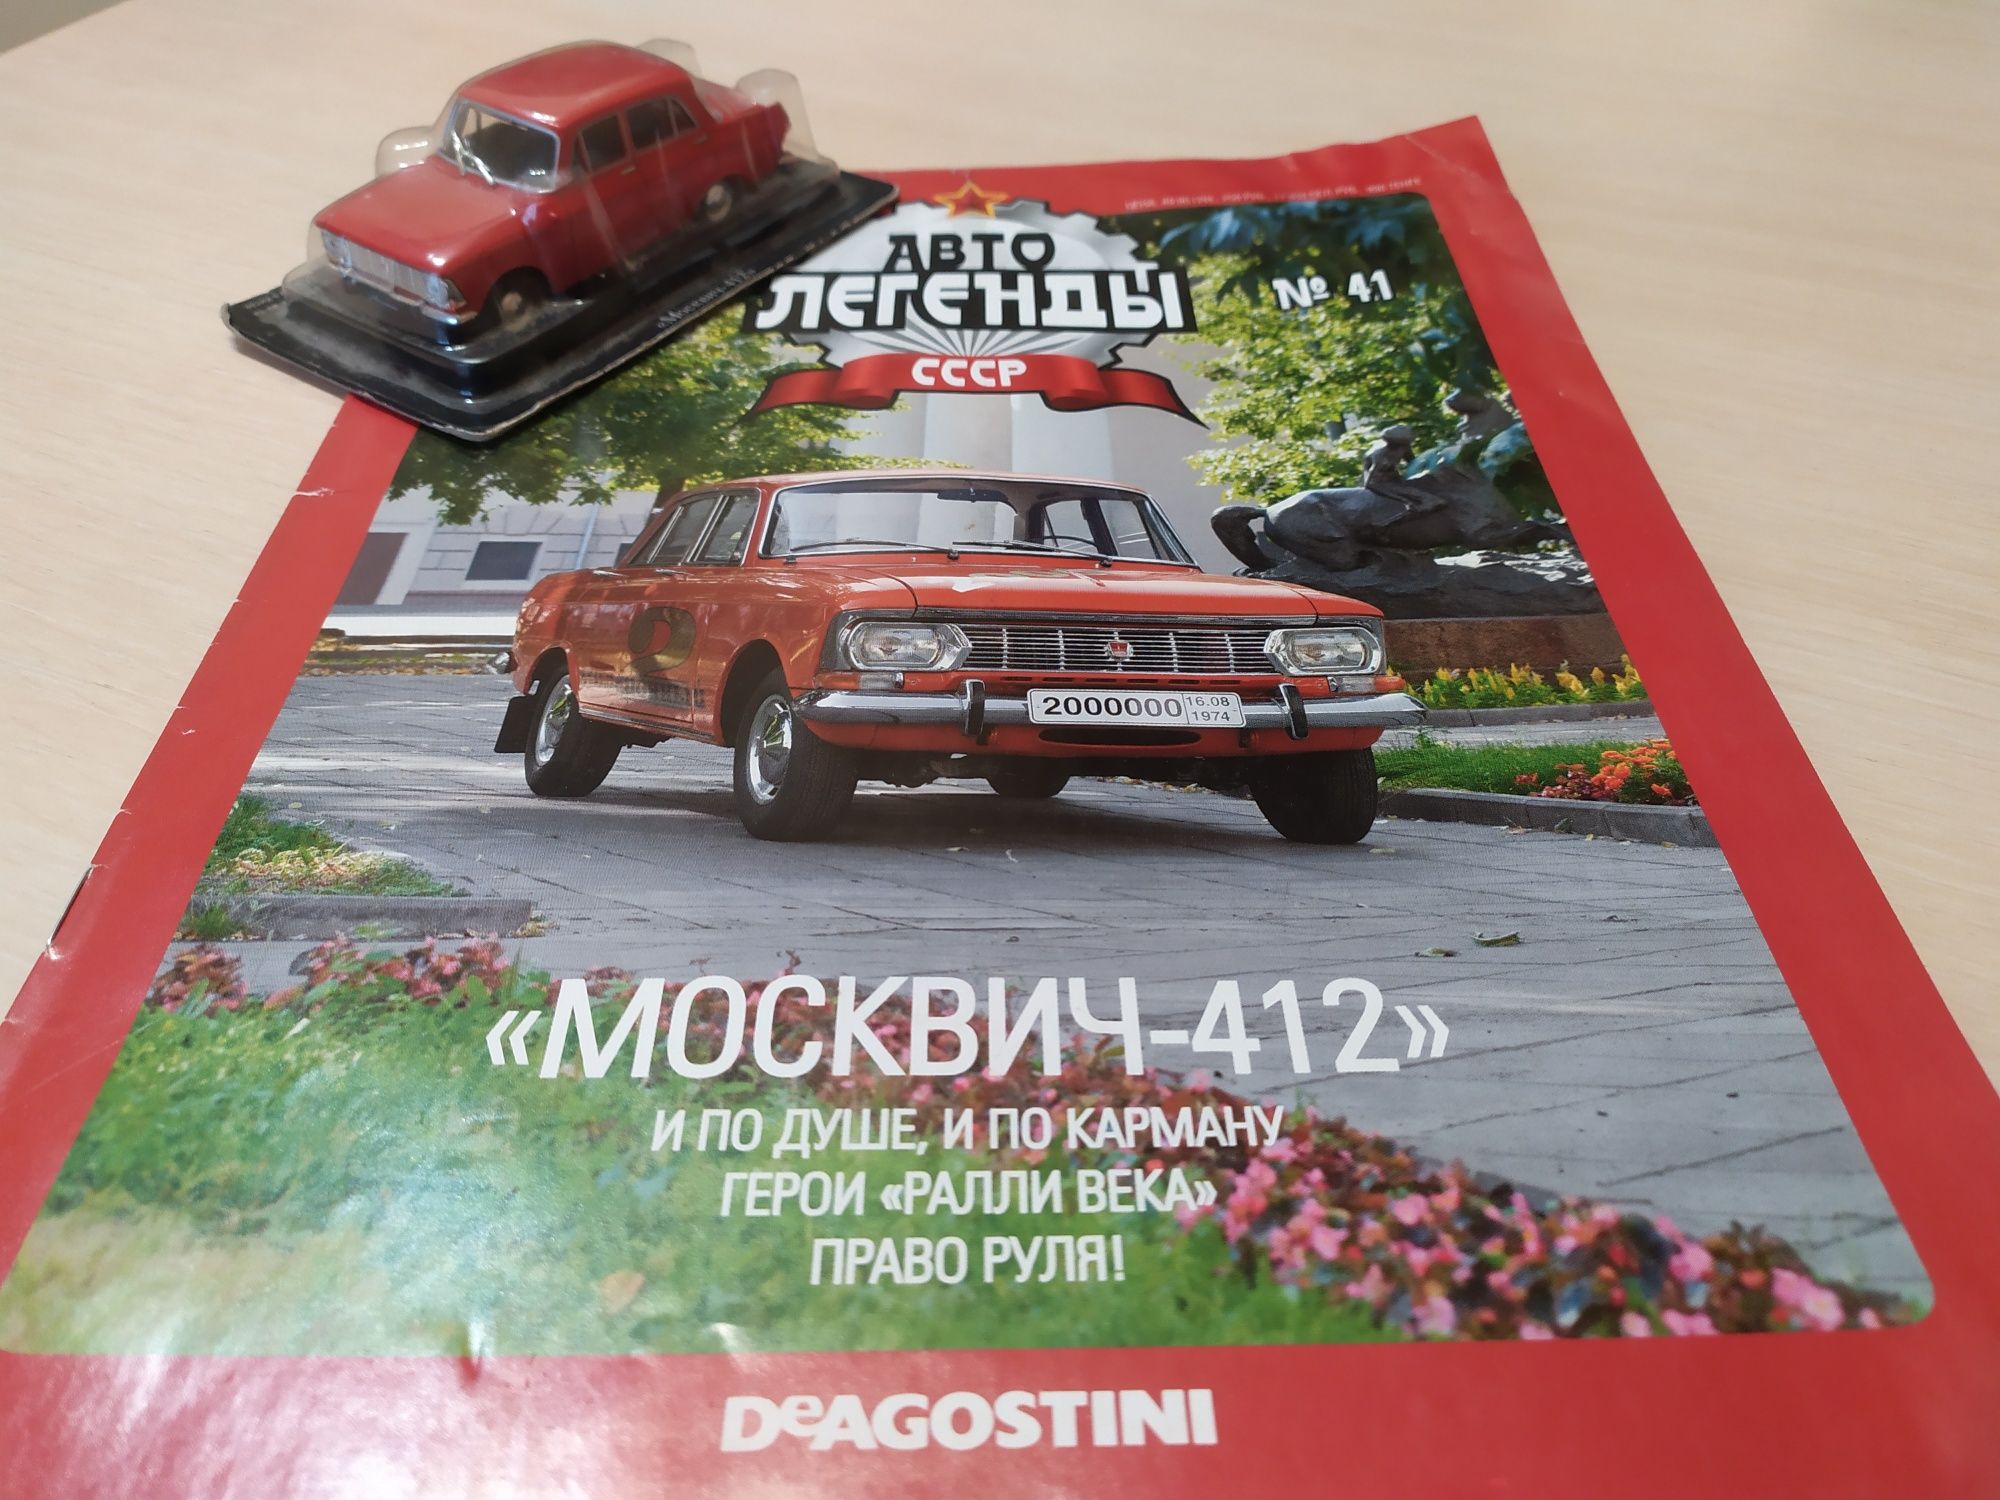 Модель 1:43, МОСКВИЧ 412, фирмы Деагостини, Автолегенды СССР